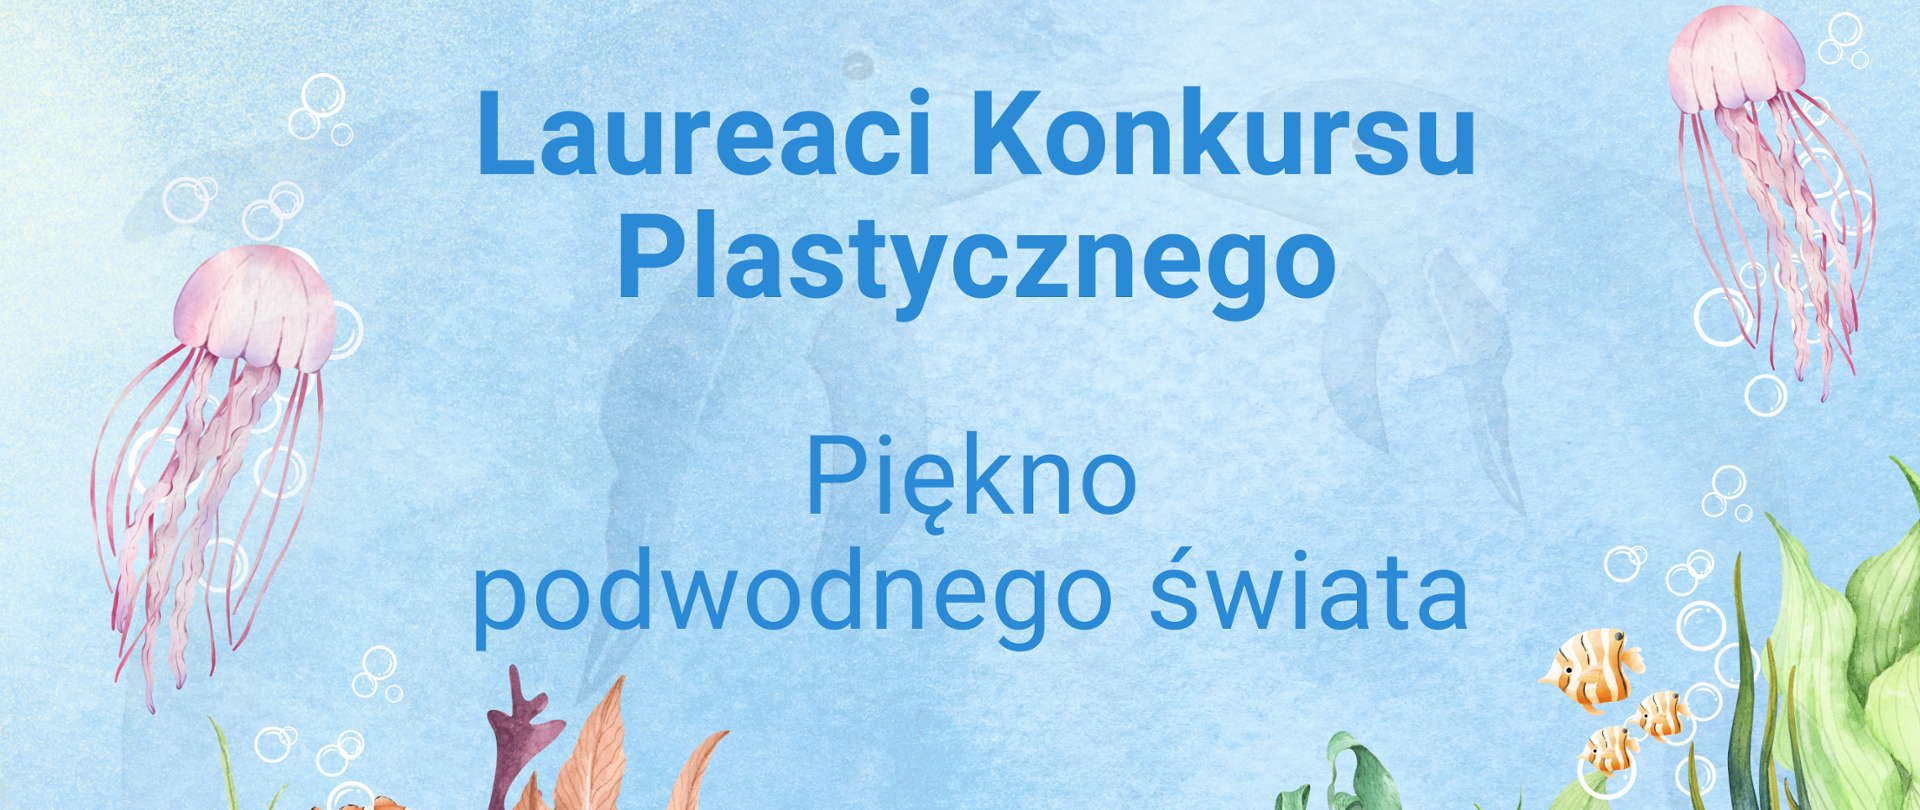 Na plakacie przedstawiającym podwodny świat, napis "Laureaci konkursu plastycznego - Piękno podwodnego świata".
W dole plakatu logo PGW Wody Polskie oraz Programu "Aktywni Błękitni"